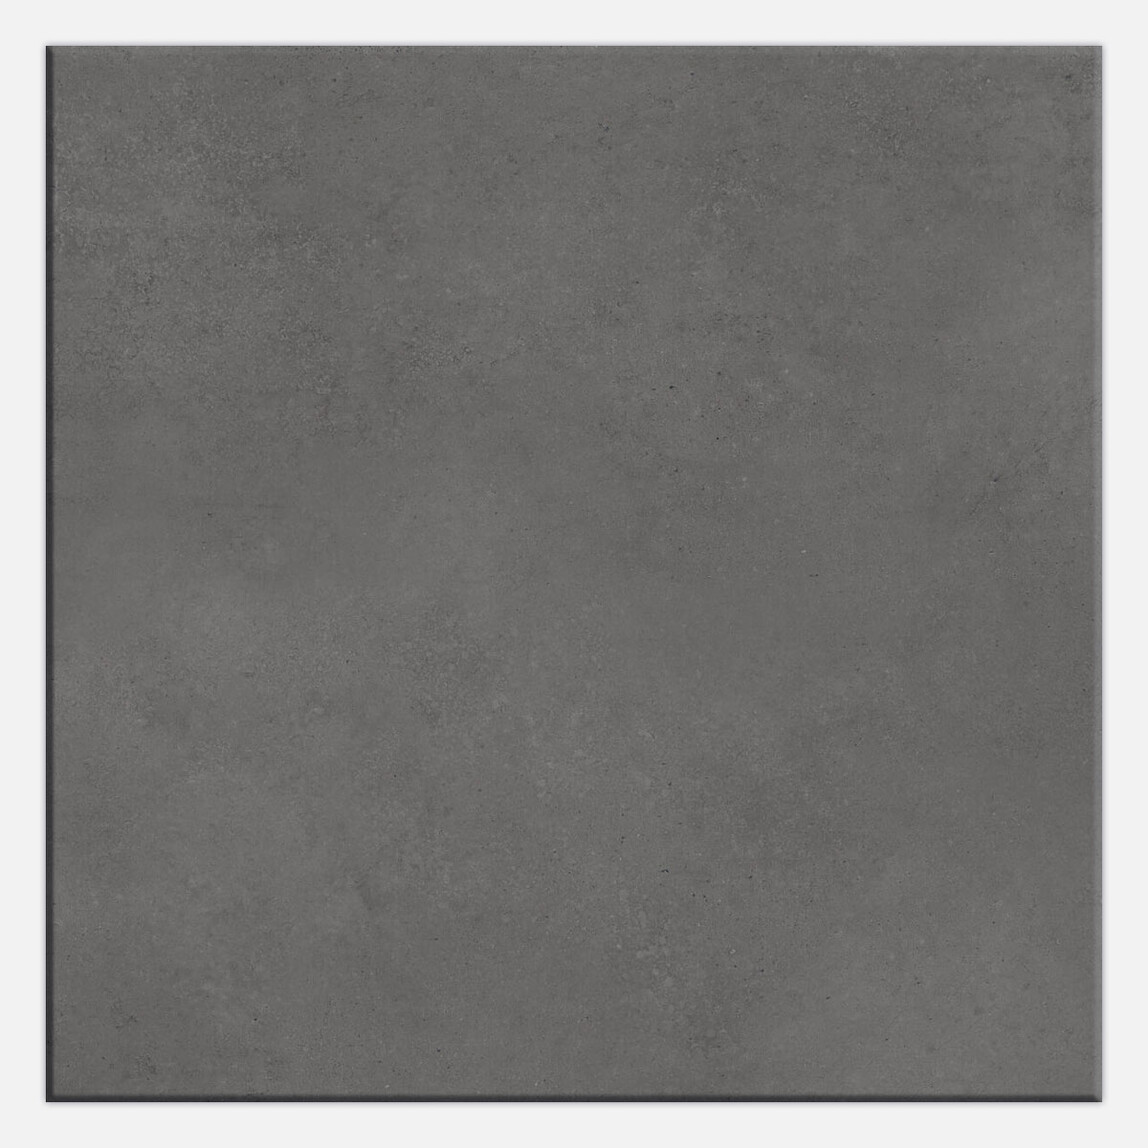    Yurtbay Sırlı Granit Core Antrasit 60x60cm 